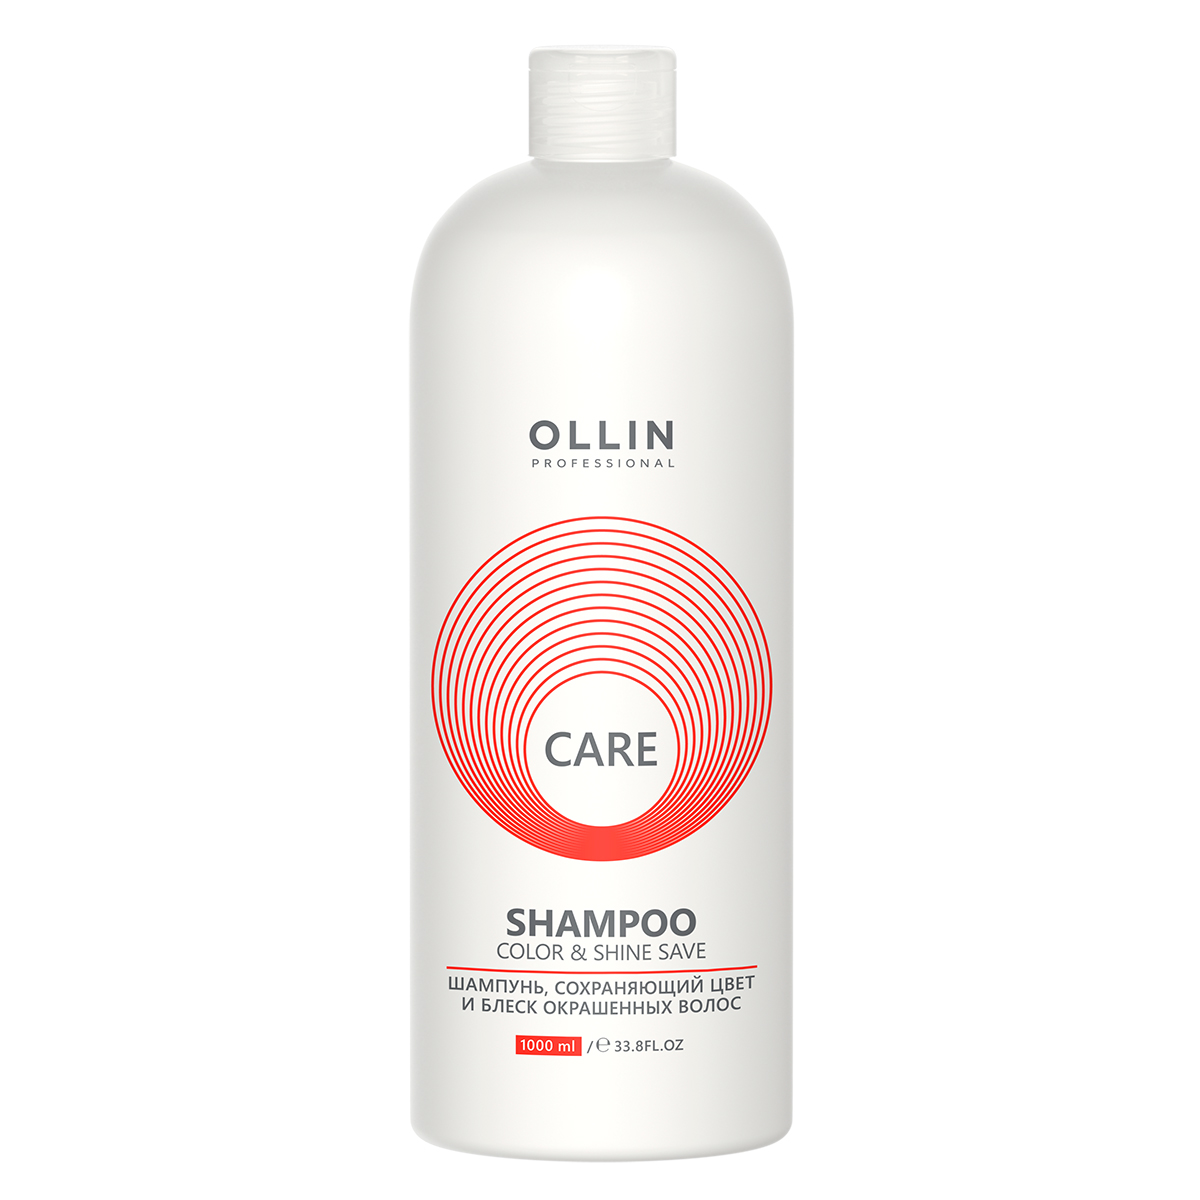 Care Шампунь, сохраняющий цвет и блеск окрашенных волос, 1000 мл, OLLIN